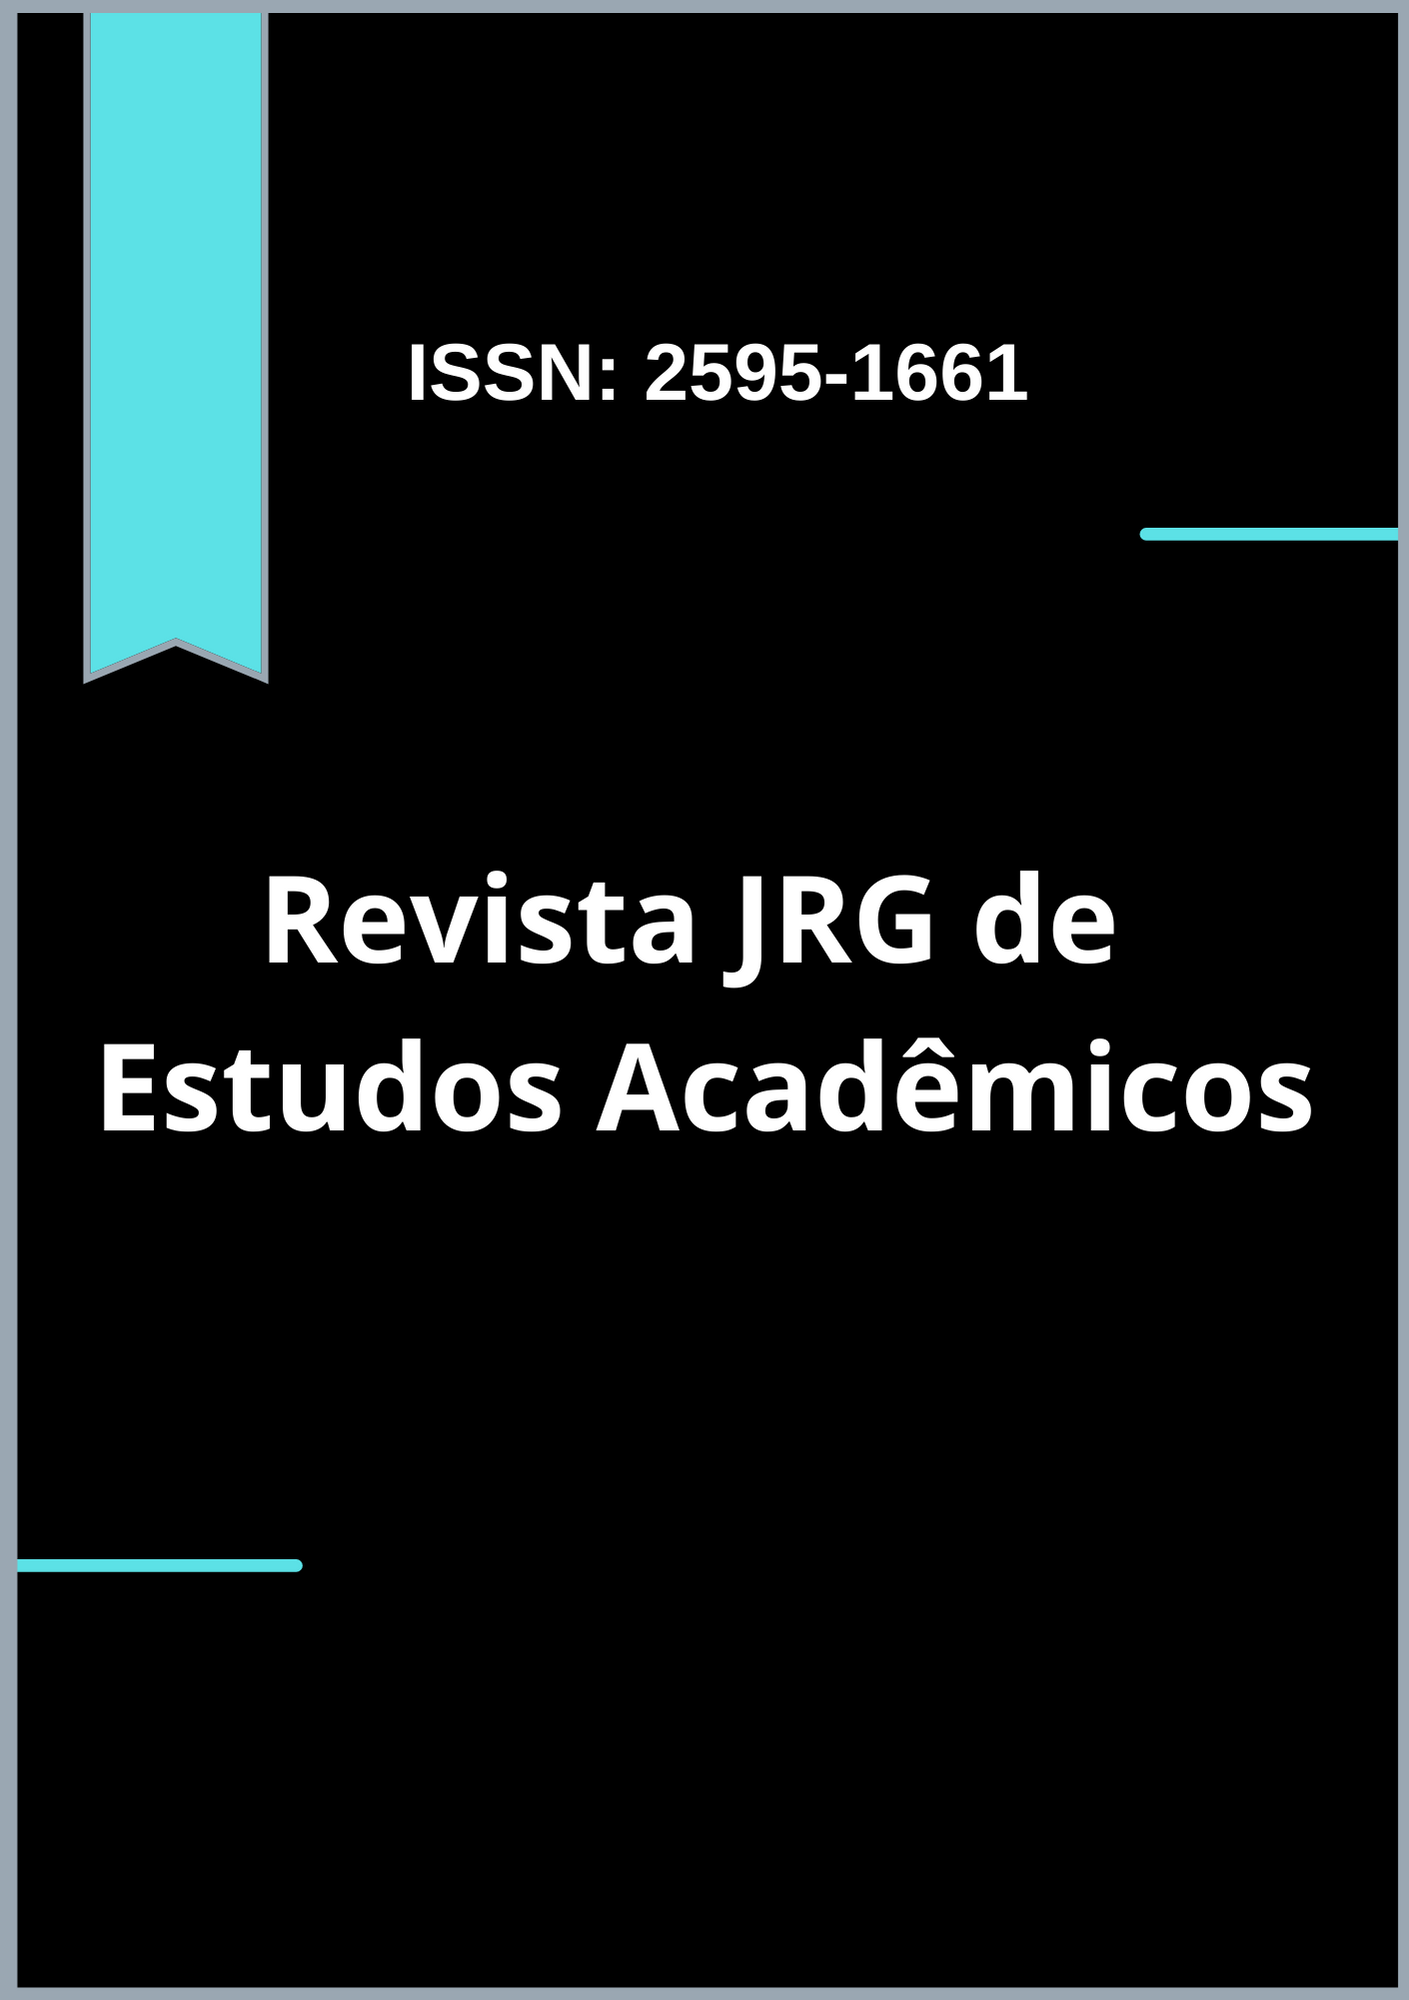 					View Vol. 4 No. 9 (2021): Revista JRG de Estudos Acadêmicos 
				